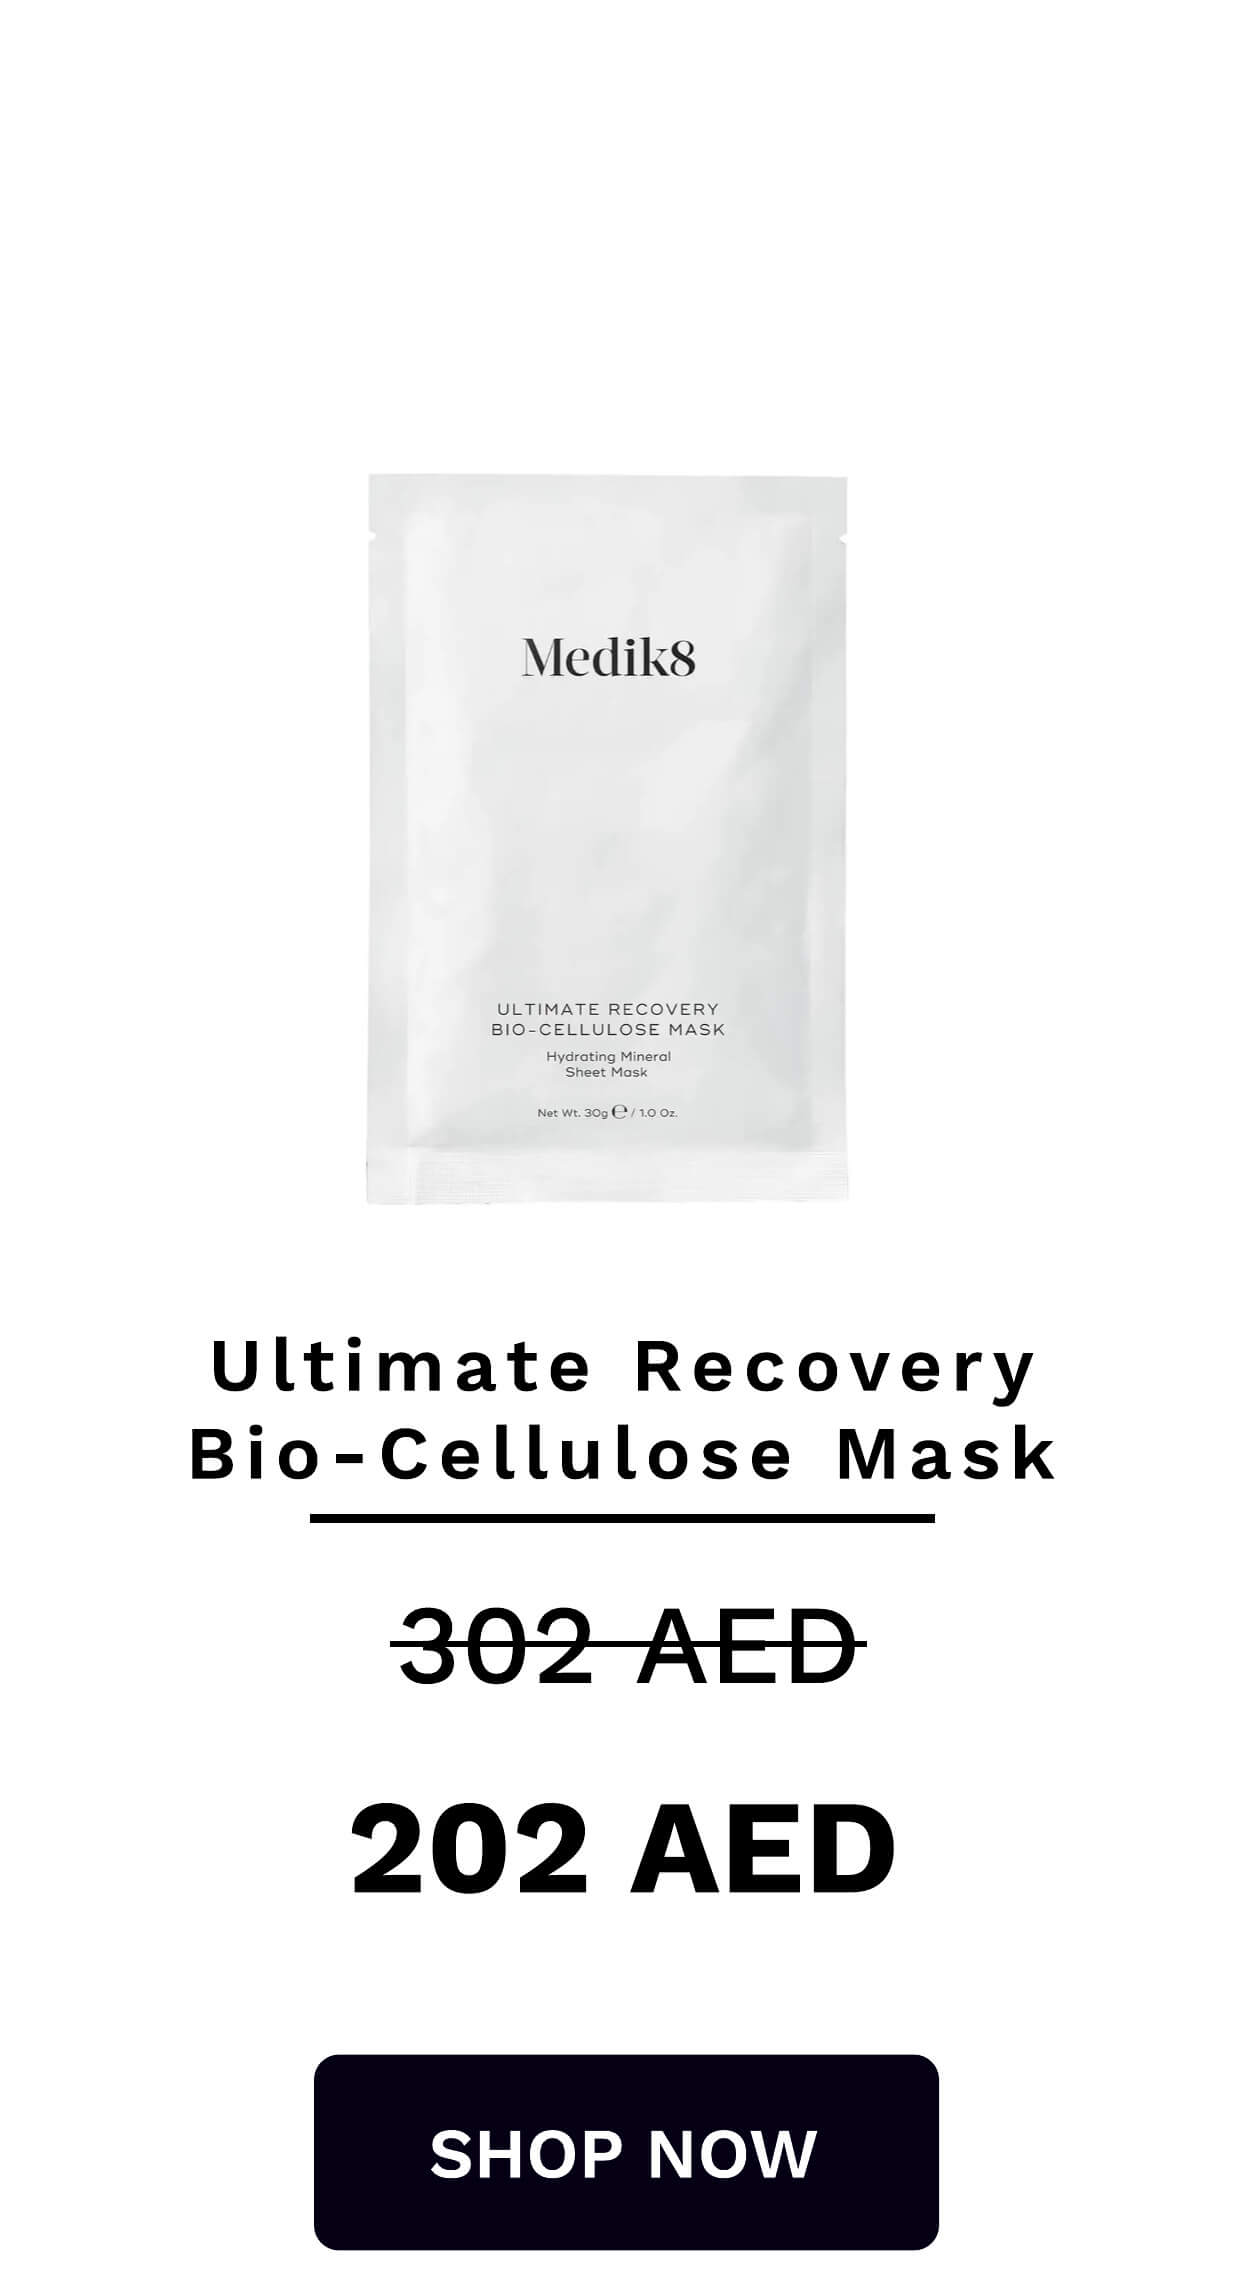 MedikS8 EEEEEEEEEEEEEEEE BIO-CELLULOSE MASK Sheet Mask Ultimate Recovery Bio-Cellulose Mask 302-AED 202 AED SHOP NOW 